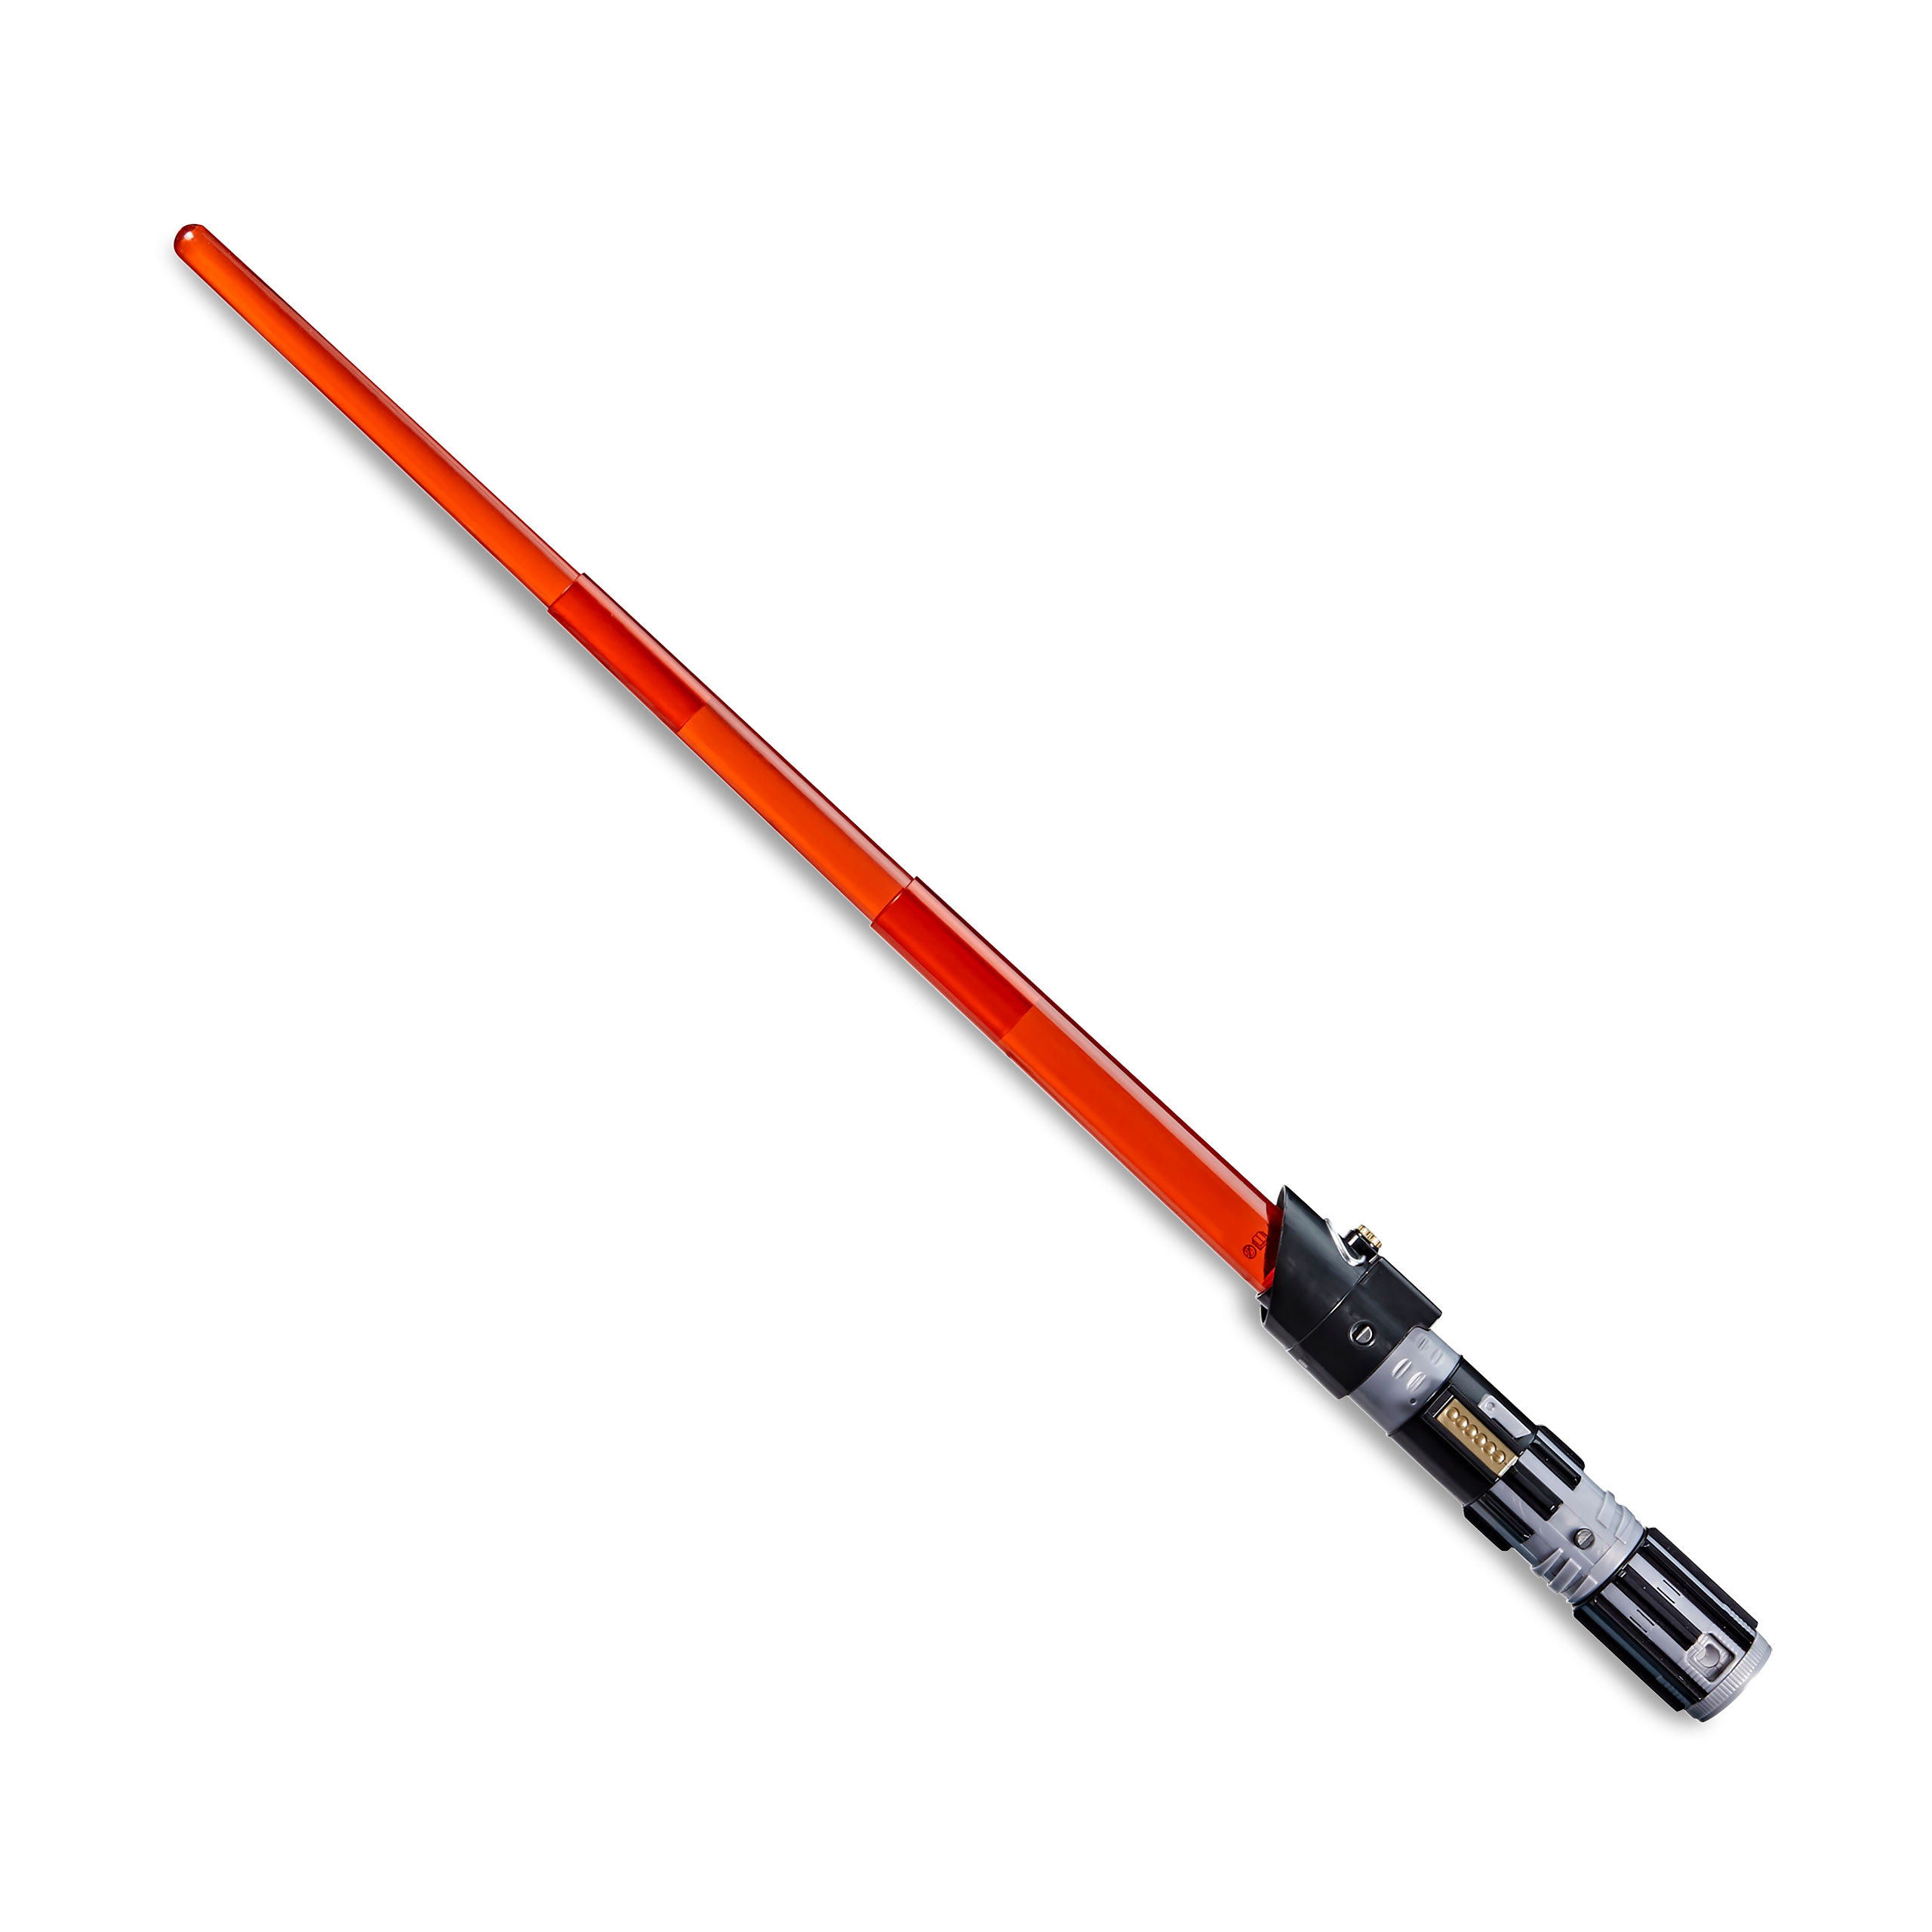 Star Wars - Darth Vader Forge Lichtschwert mit Licht- und Soundeffekt